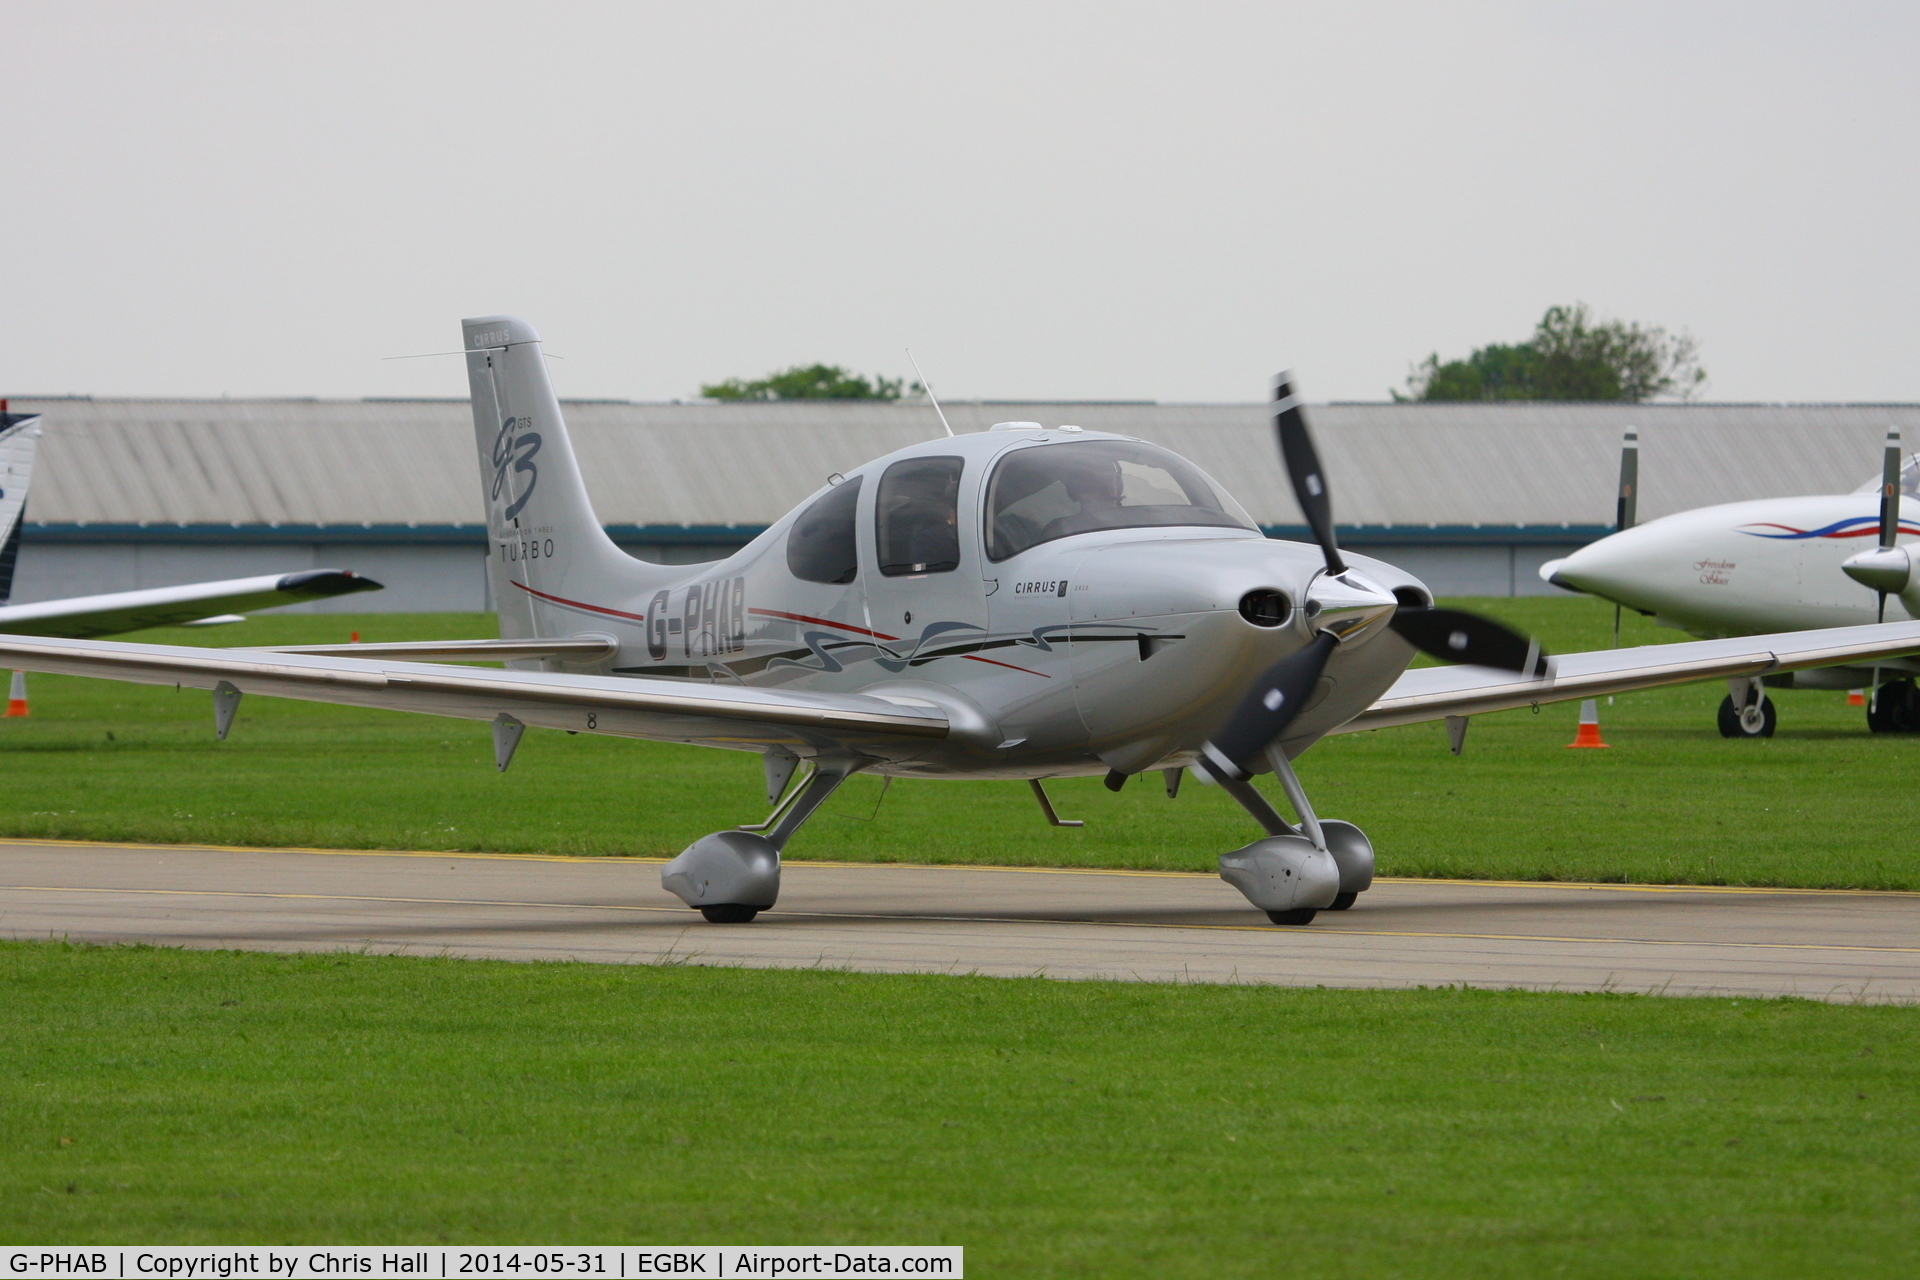 G-PHAB, 2007 Cirrus SR22 G3 Turbo C/N 2710, at AeroExpo 2014